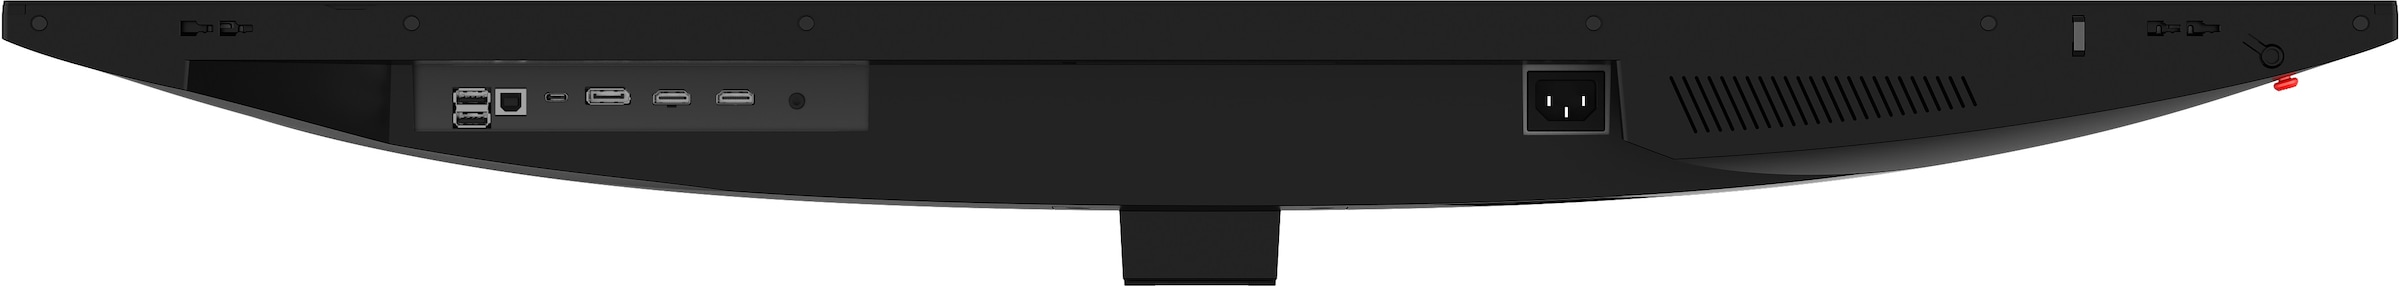 MSI Gaming-LED-Monitor »MAG401QR«, 102 cm/40 Zoll, 3440 x 1440 px, UWQHD, 1 ms Reaktionszeit, 155 Hz, 3 Jahre Herstellergarantie, USB-C